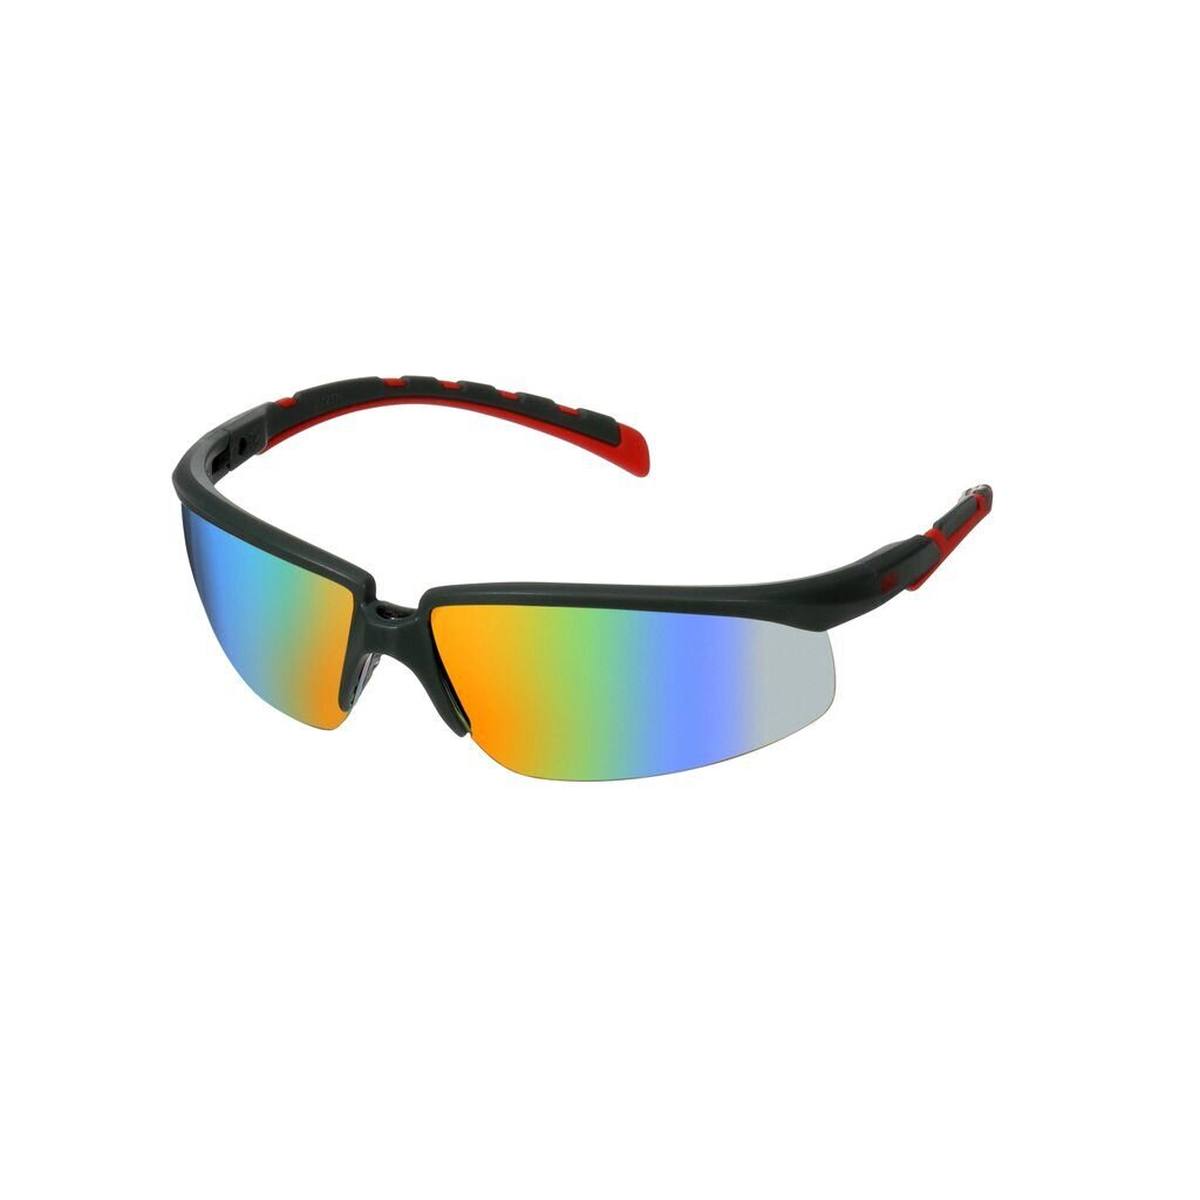 3M Gafas de protección Solus 2000, patillas gris/rojo, revestimiento antivaho Scotchgard (K&amp;N), lente transparente, ángulo ajustable, S2001SGAF-RED-EU